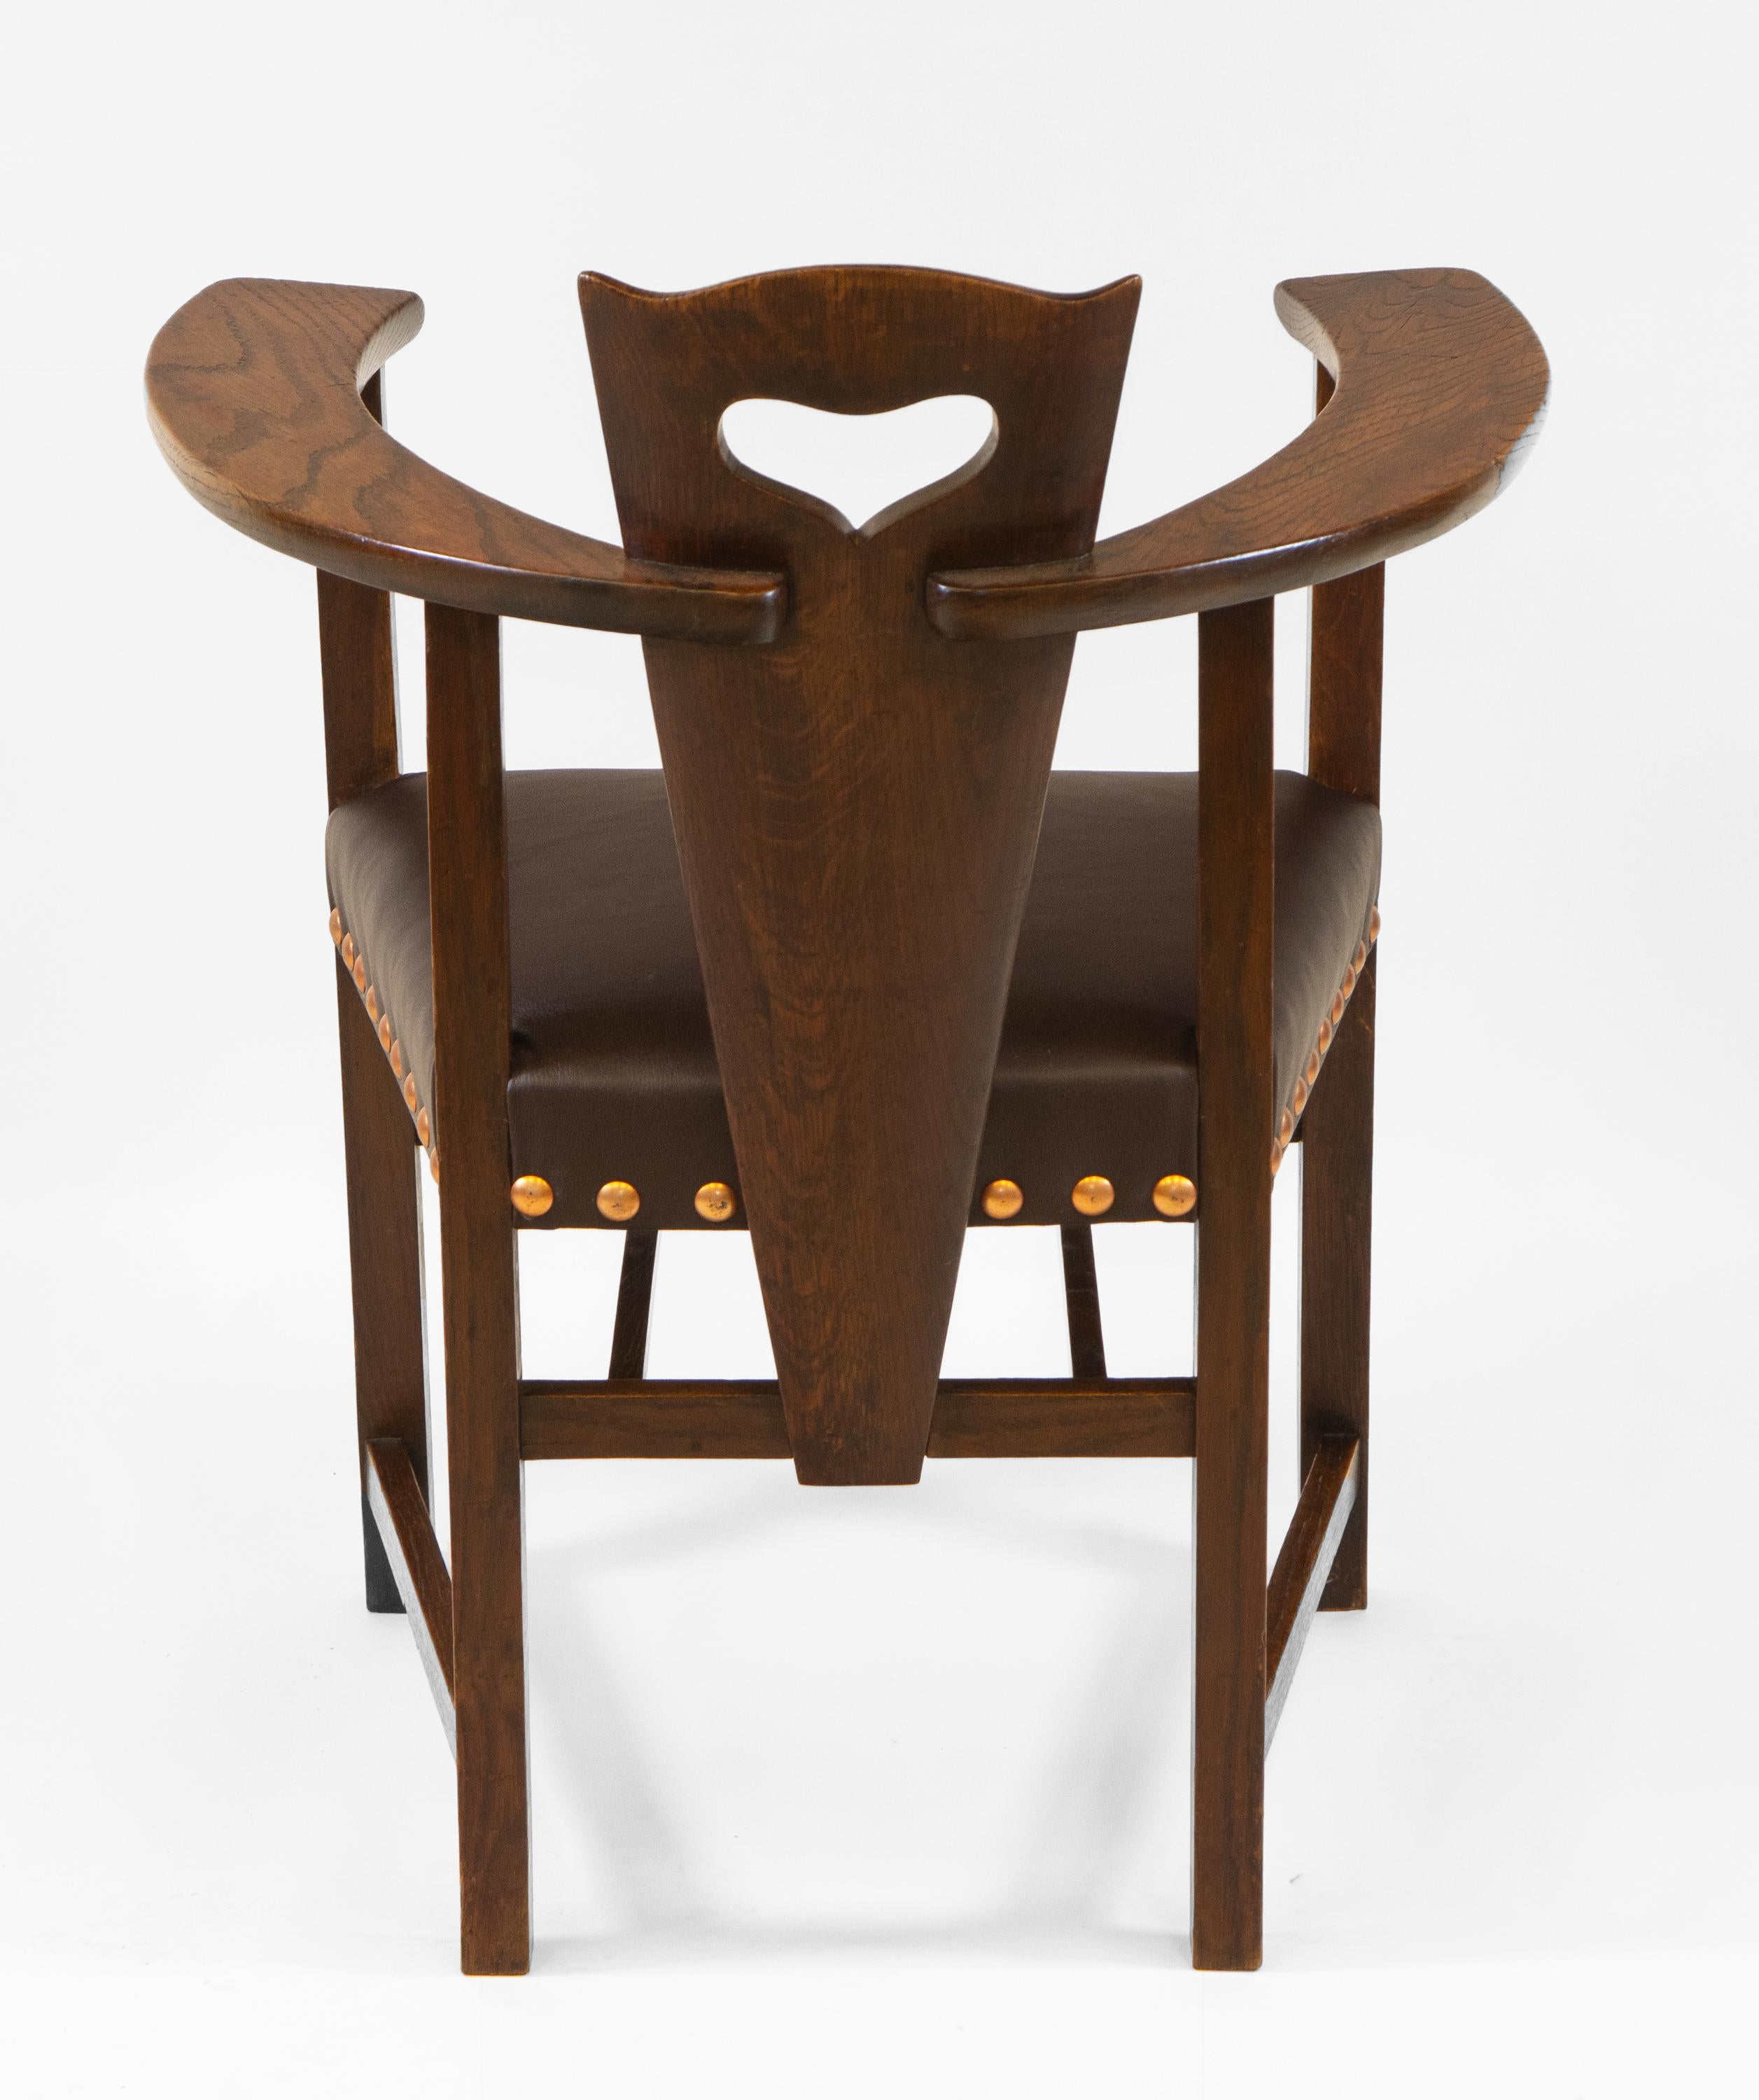 Ein hervorragender Glasgow School Arts And Crafts Sessel aus Eiche. Nach einem Entwurf von George Walton für Liberty & Co. Circa 1895.

Der Stuhl ist fast identisch mit dem Entwurf von George Walton, hat aber eine abweichend geformte Rückenlehne.